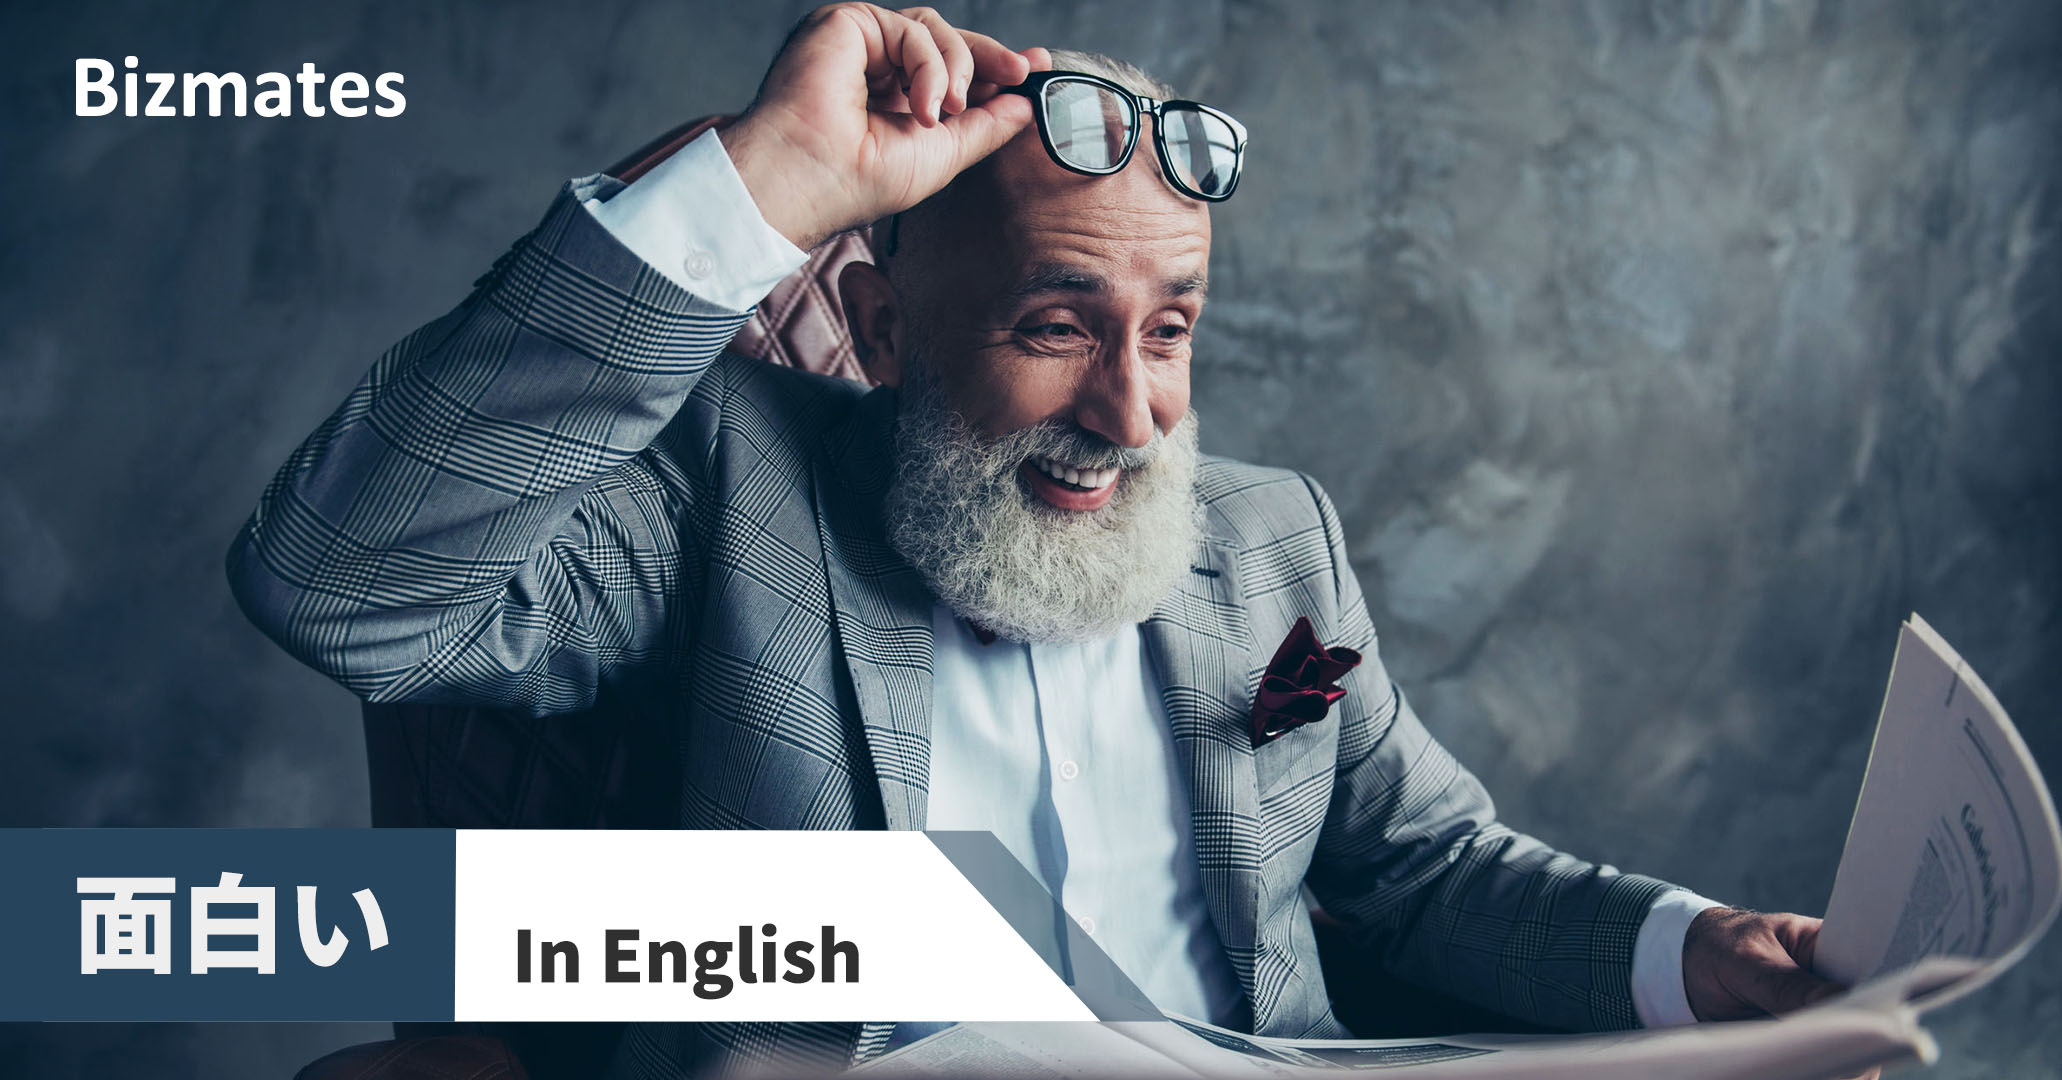 面白い を英語で言うと 場面ごとに適切な表現を使おう 英語で暮らしと仕事が楽しくなるビズメイツブログ Bizmates Blog